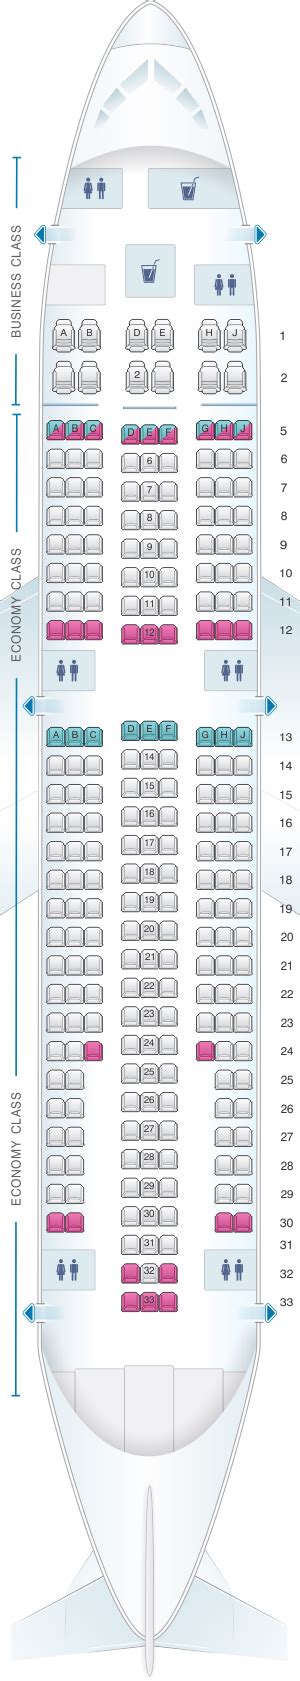 Seat Map White Airways Airbus A310 Seatmaestro